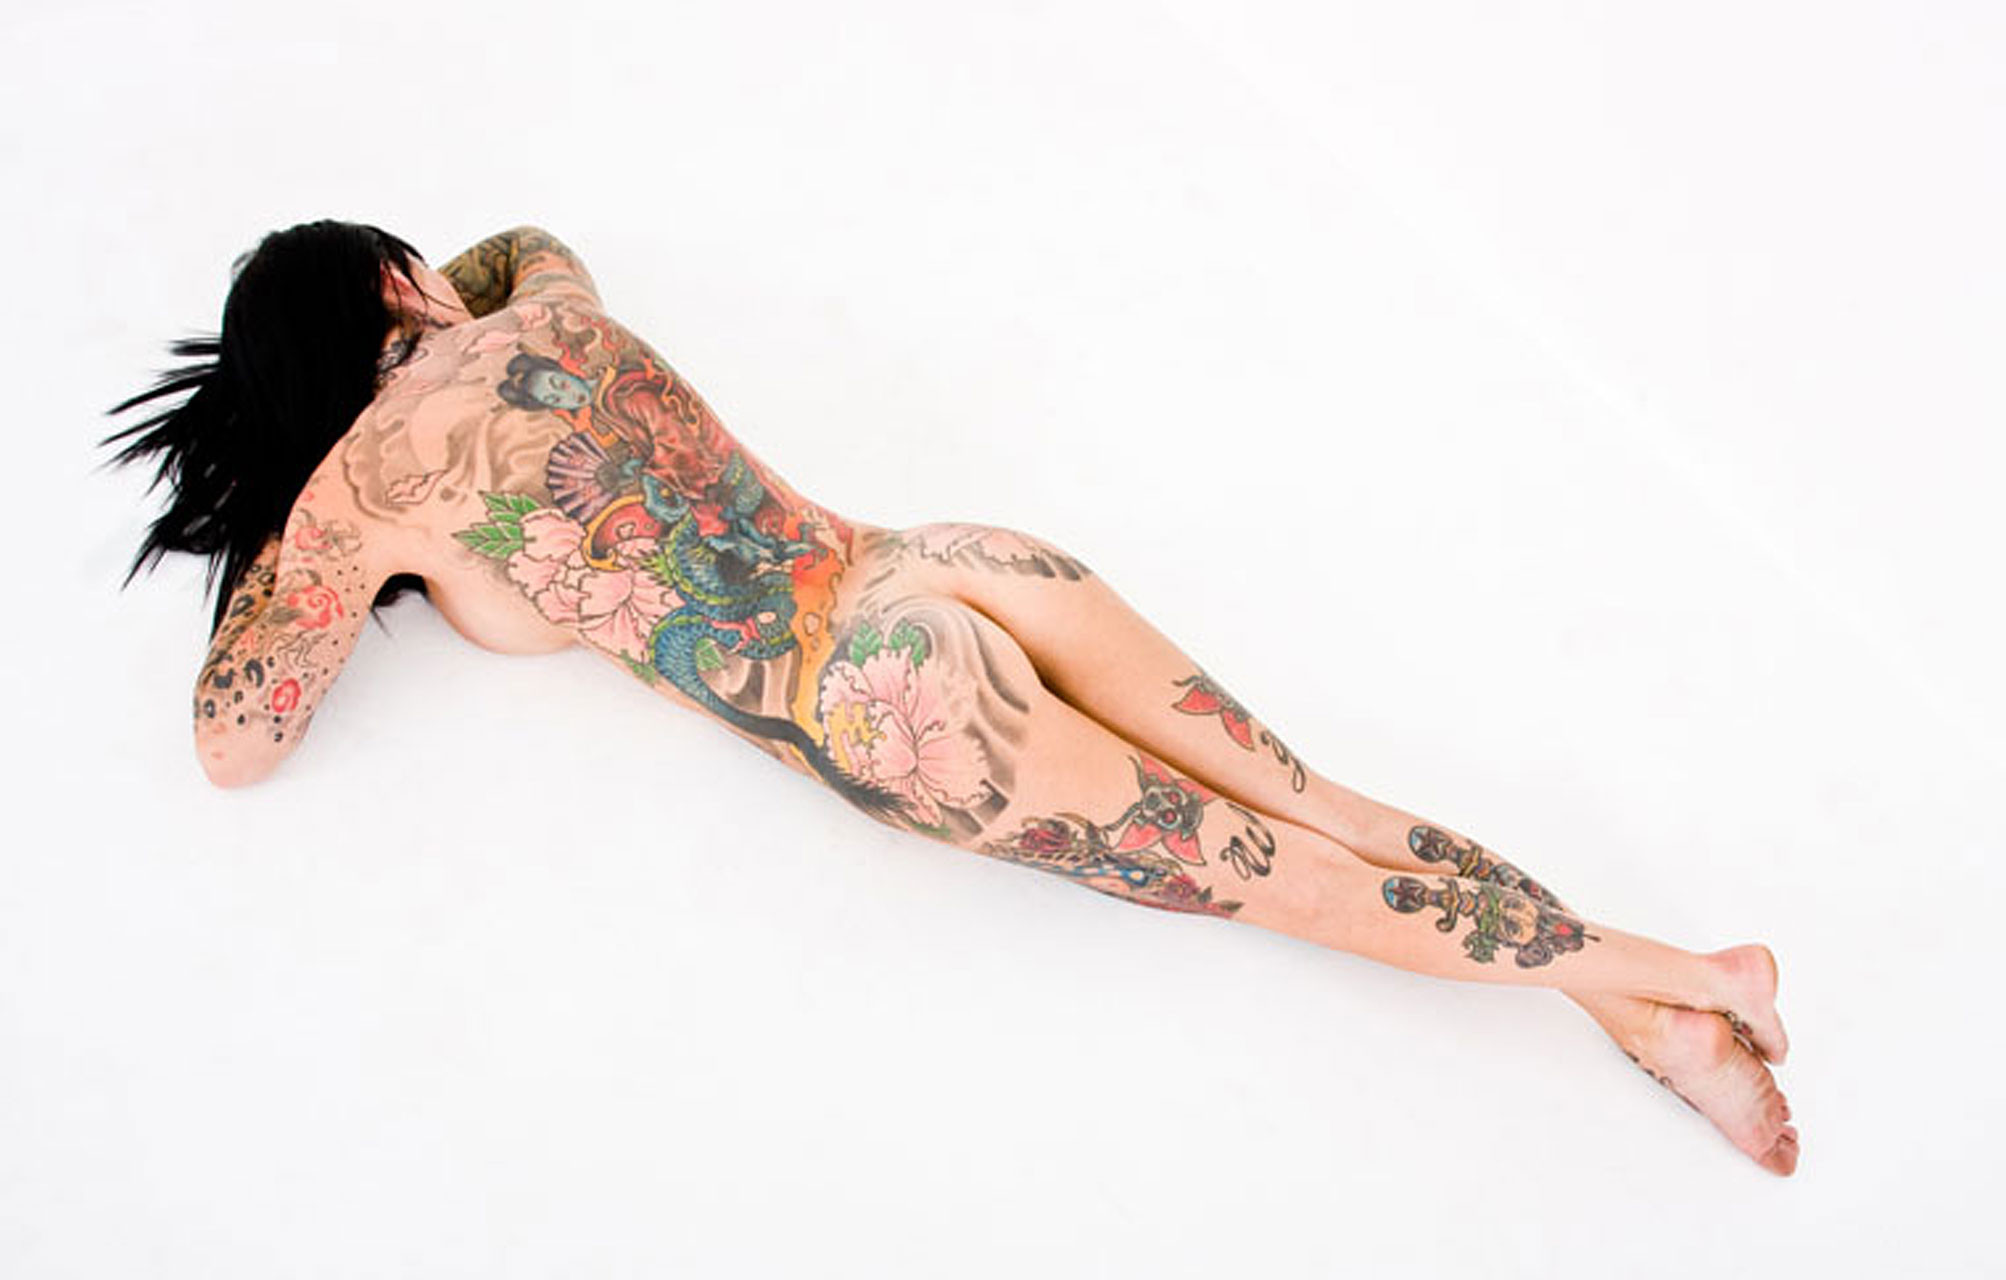 Michelle bombshell montrant son corps nu et ses tatouages
 #75355698